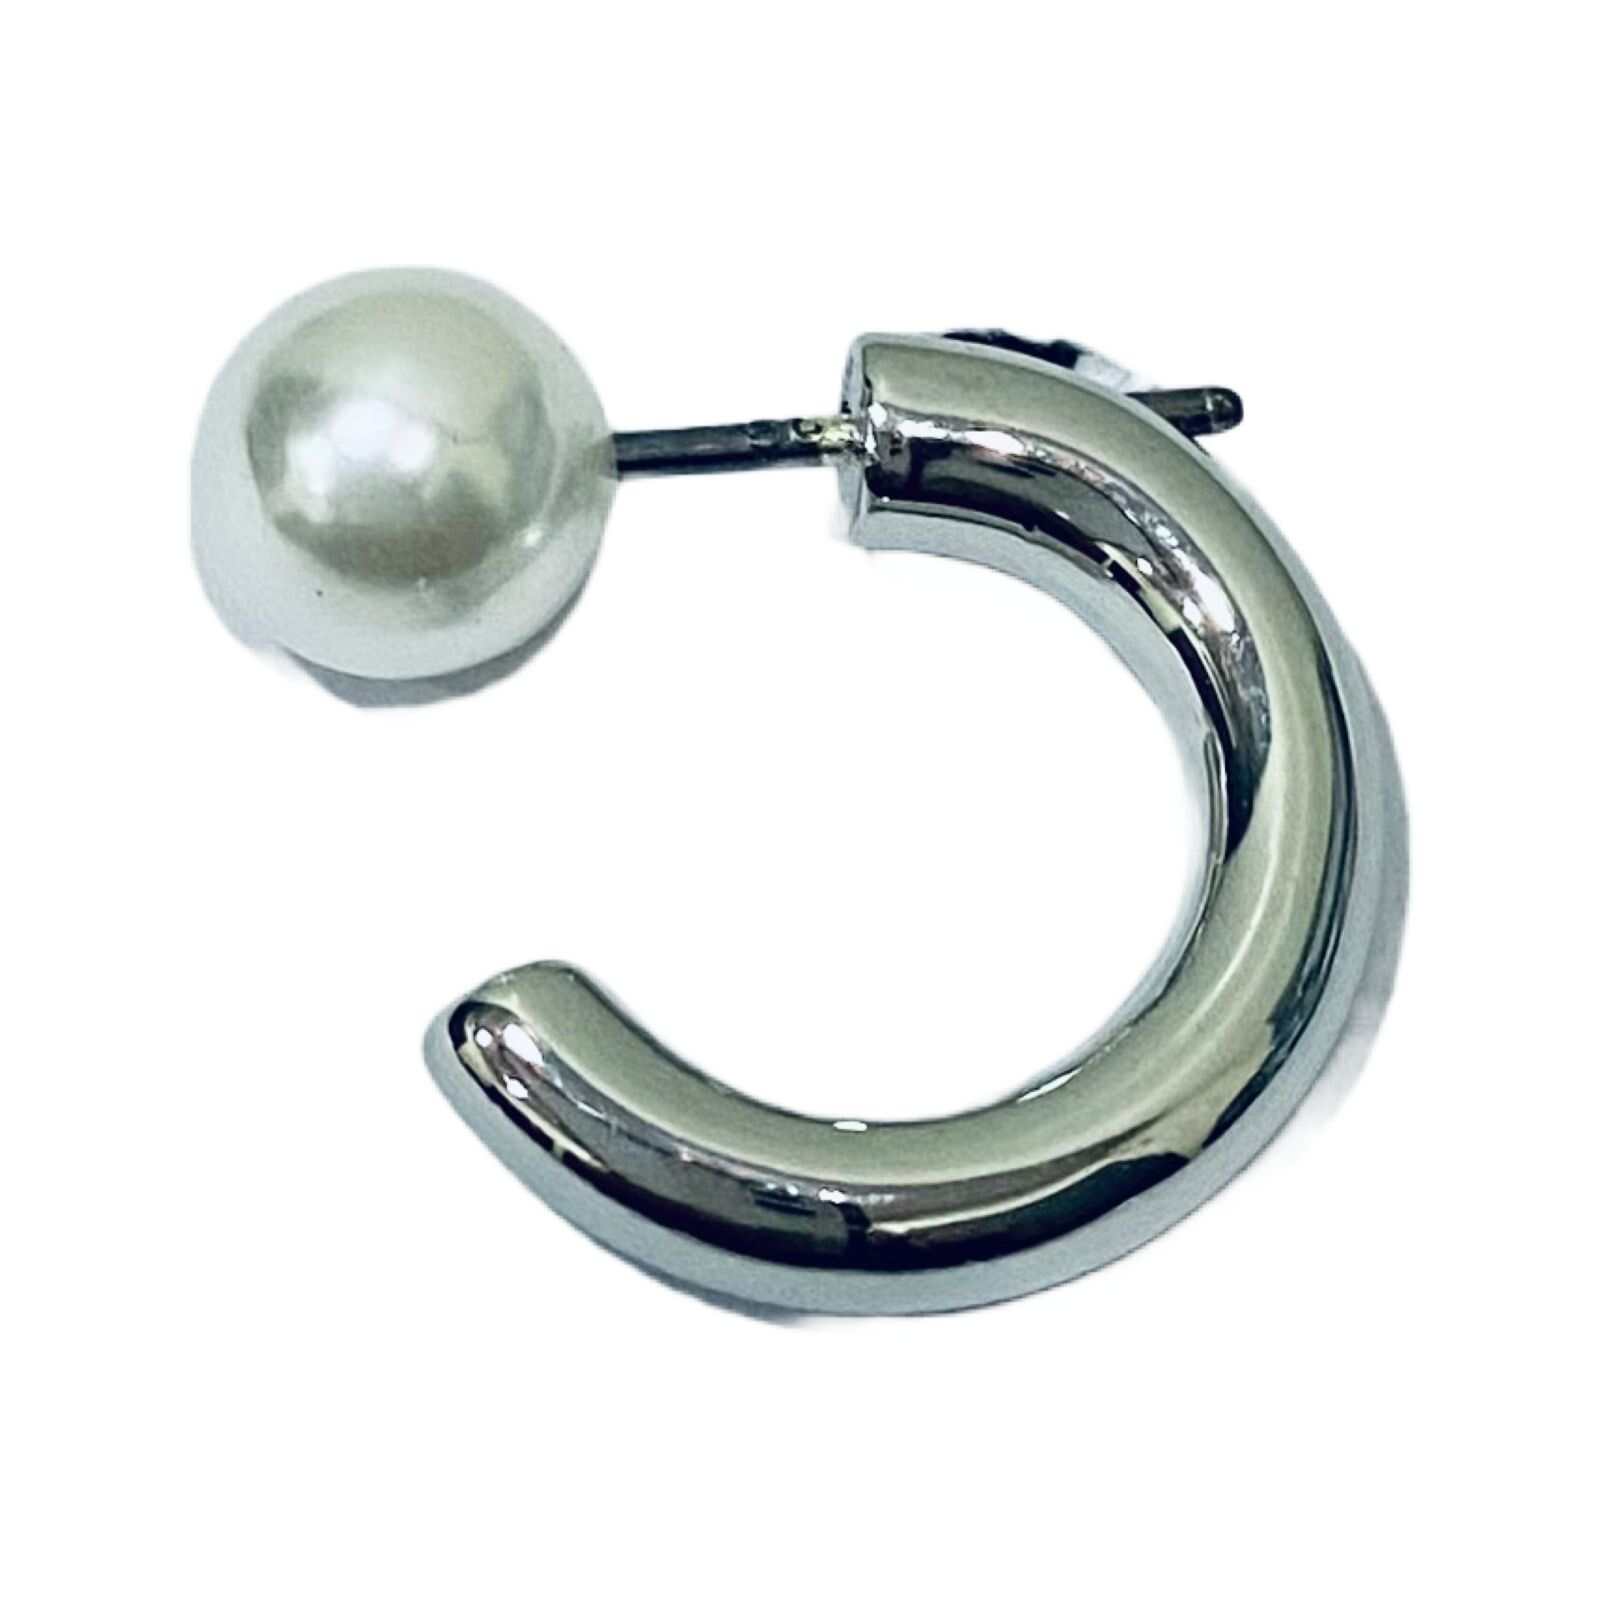 Imitation Earrings | Silver Pearl Earrings for Women | Artificial Jewelry